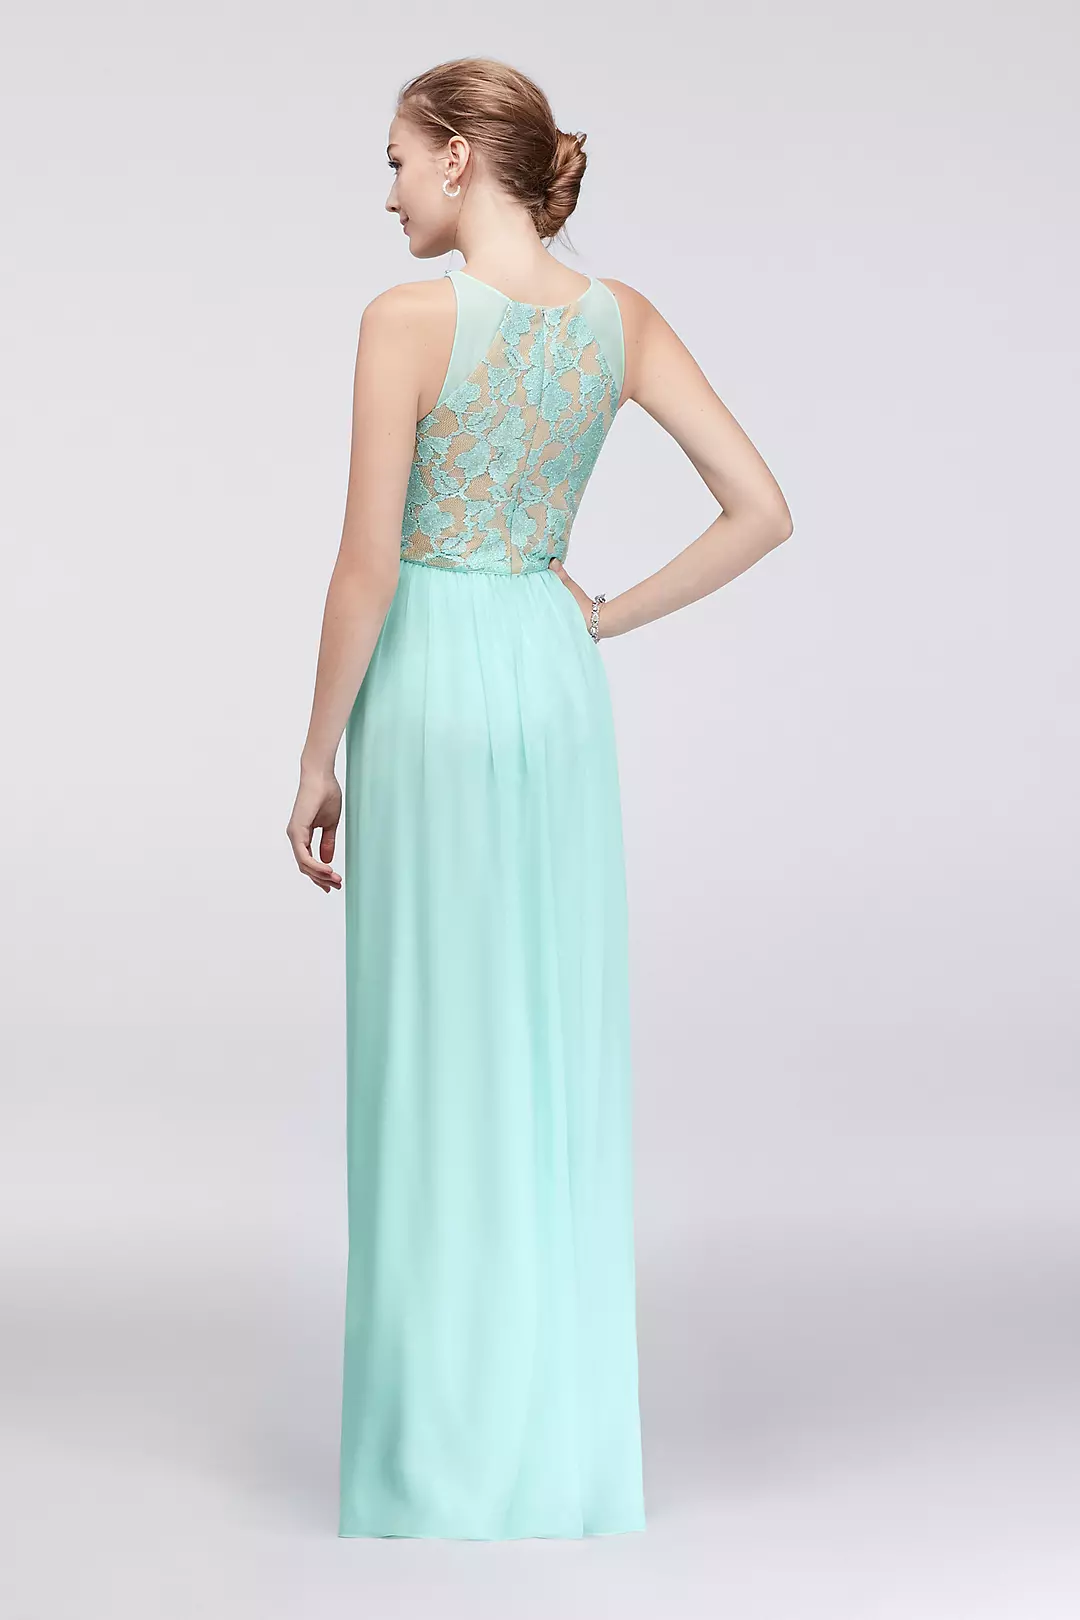 Sleeveless Glitter Lace and Chiffon Dress Image 2